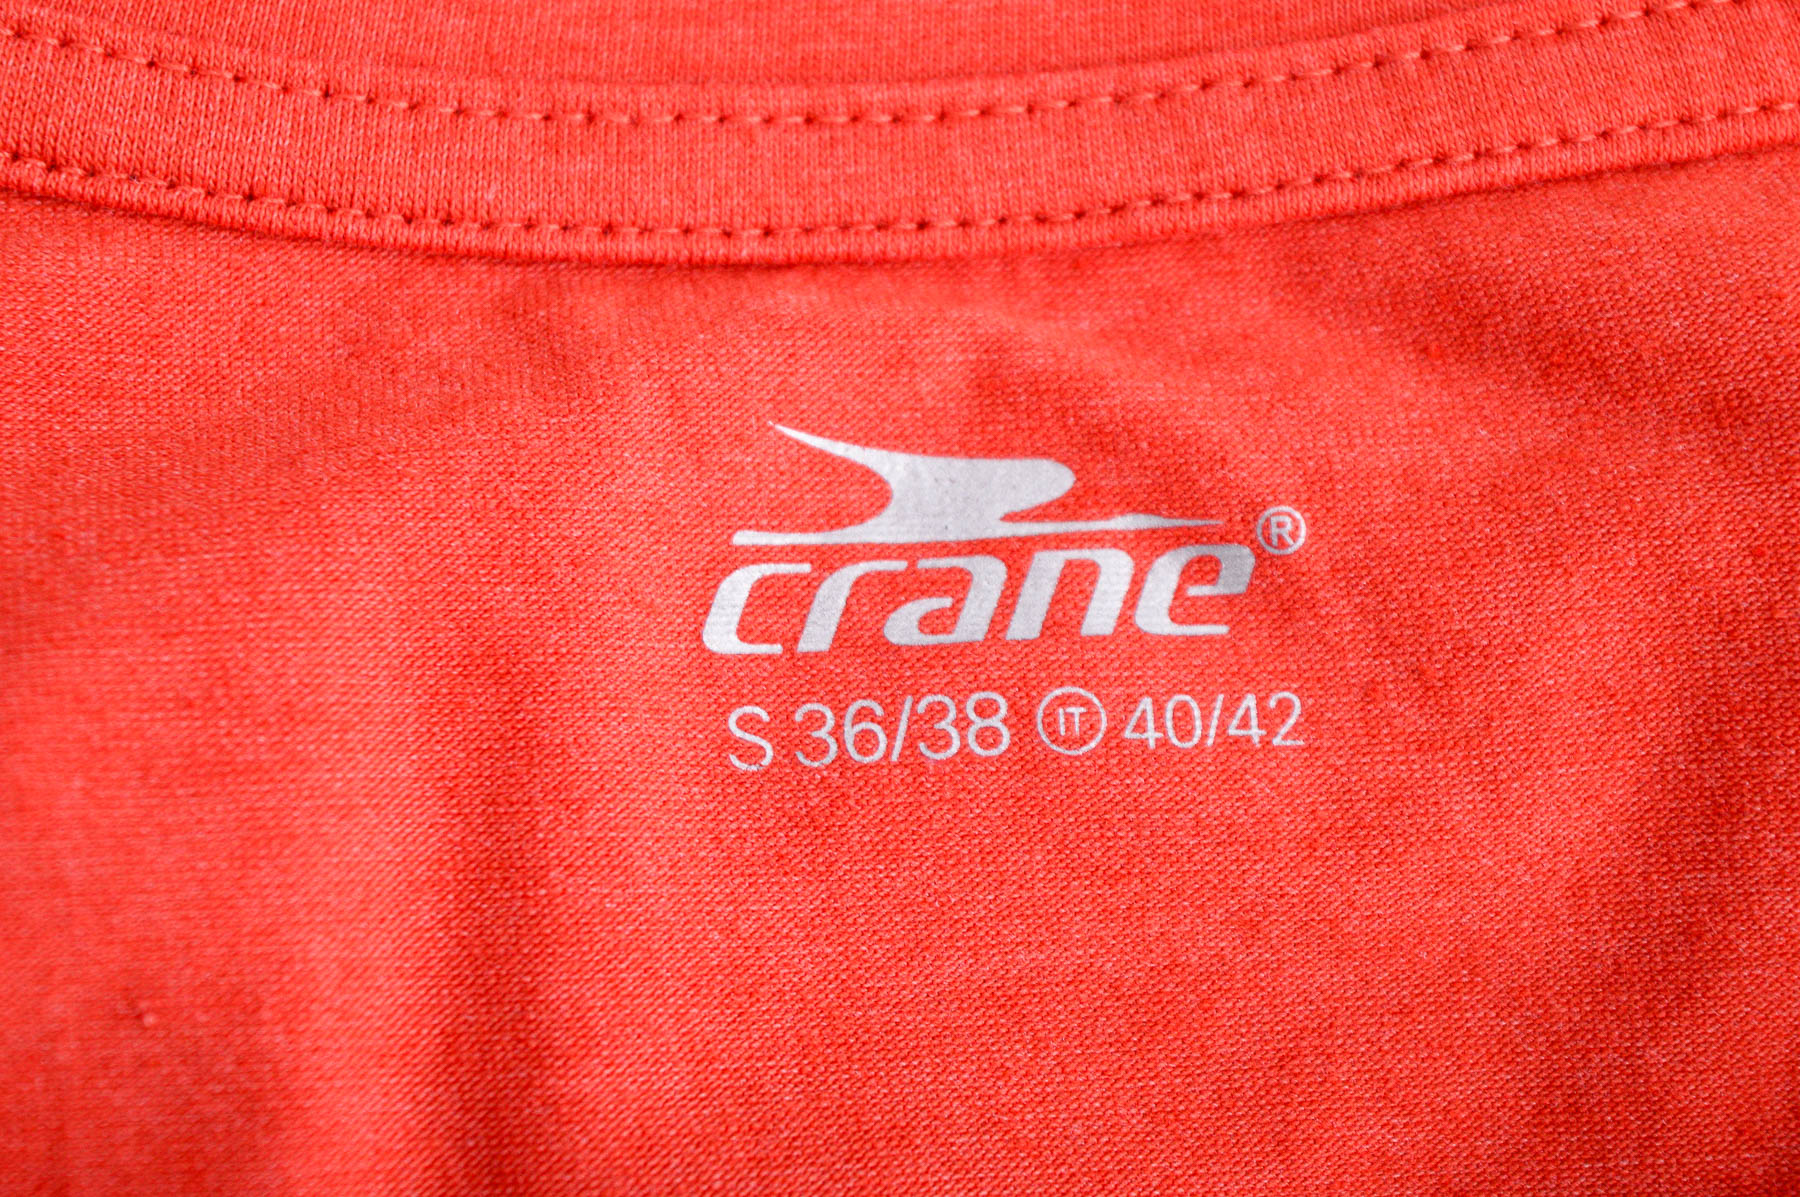 Damski podkoszulek - Crane - 2